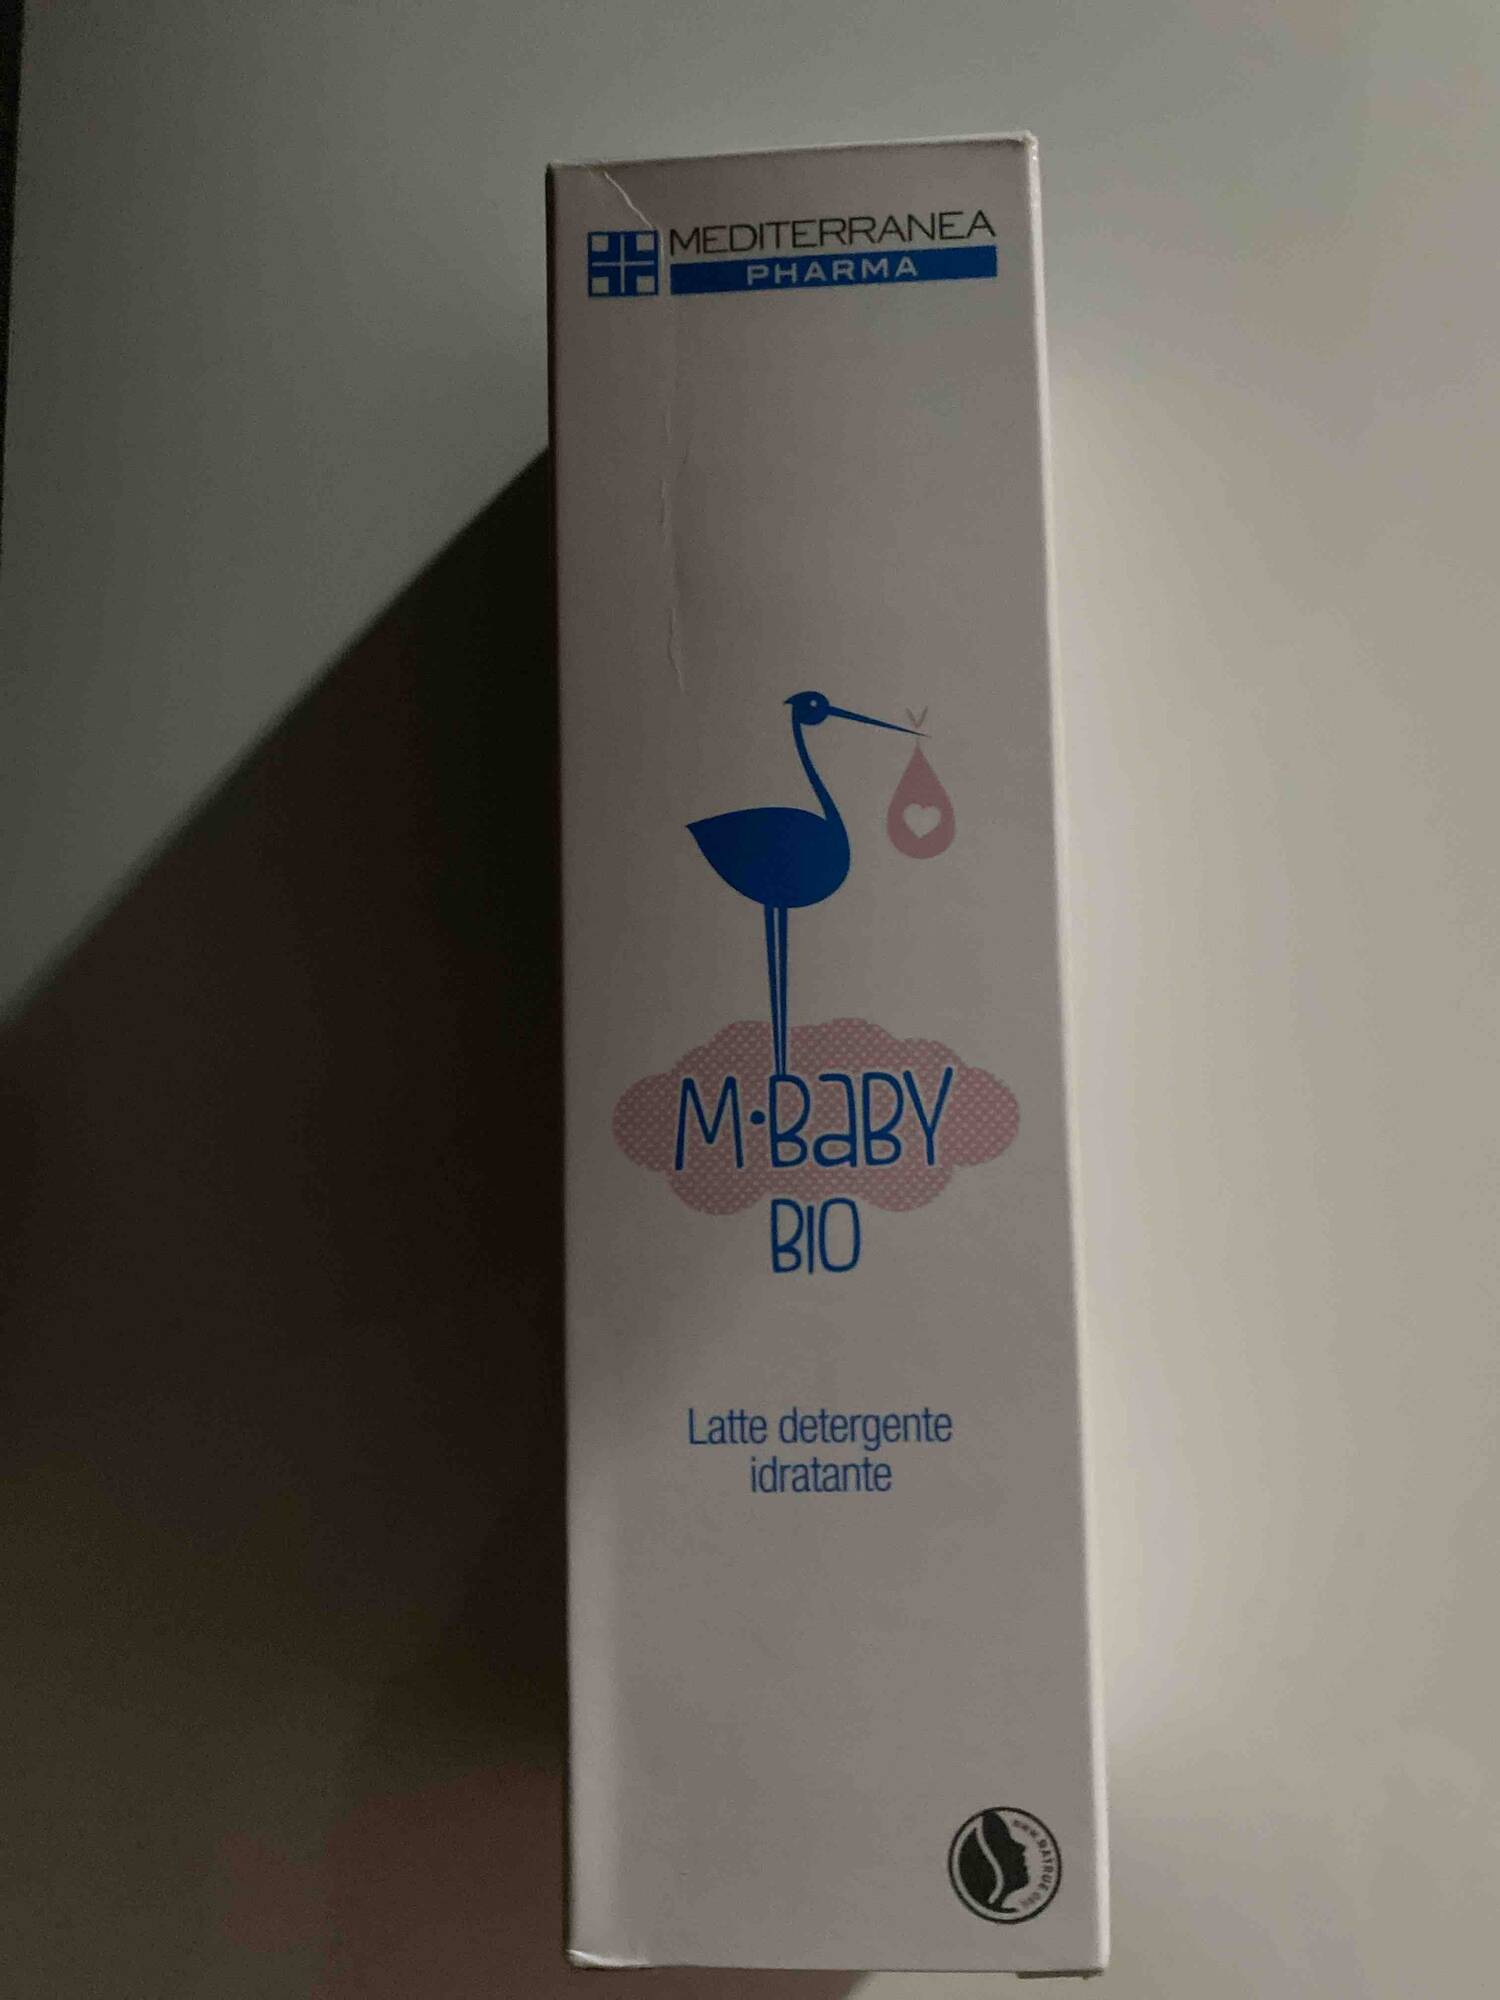 MEDITERRANEA - M baby bio - Latte detergente idratante